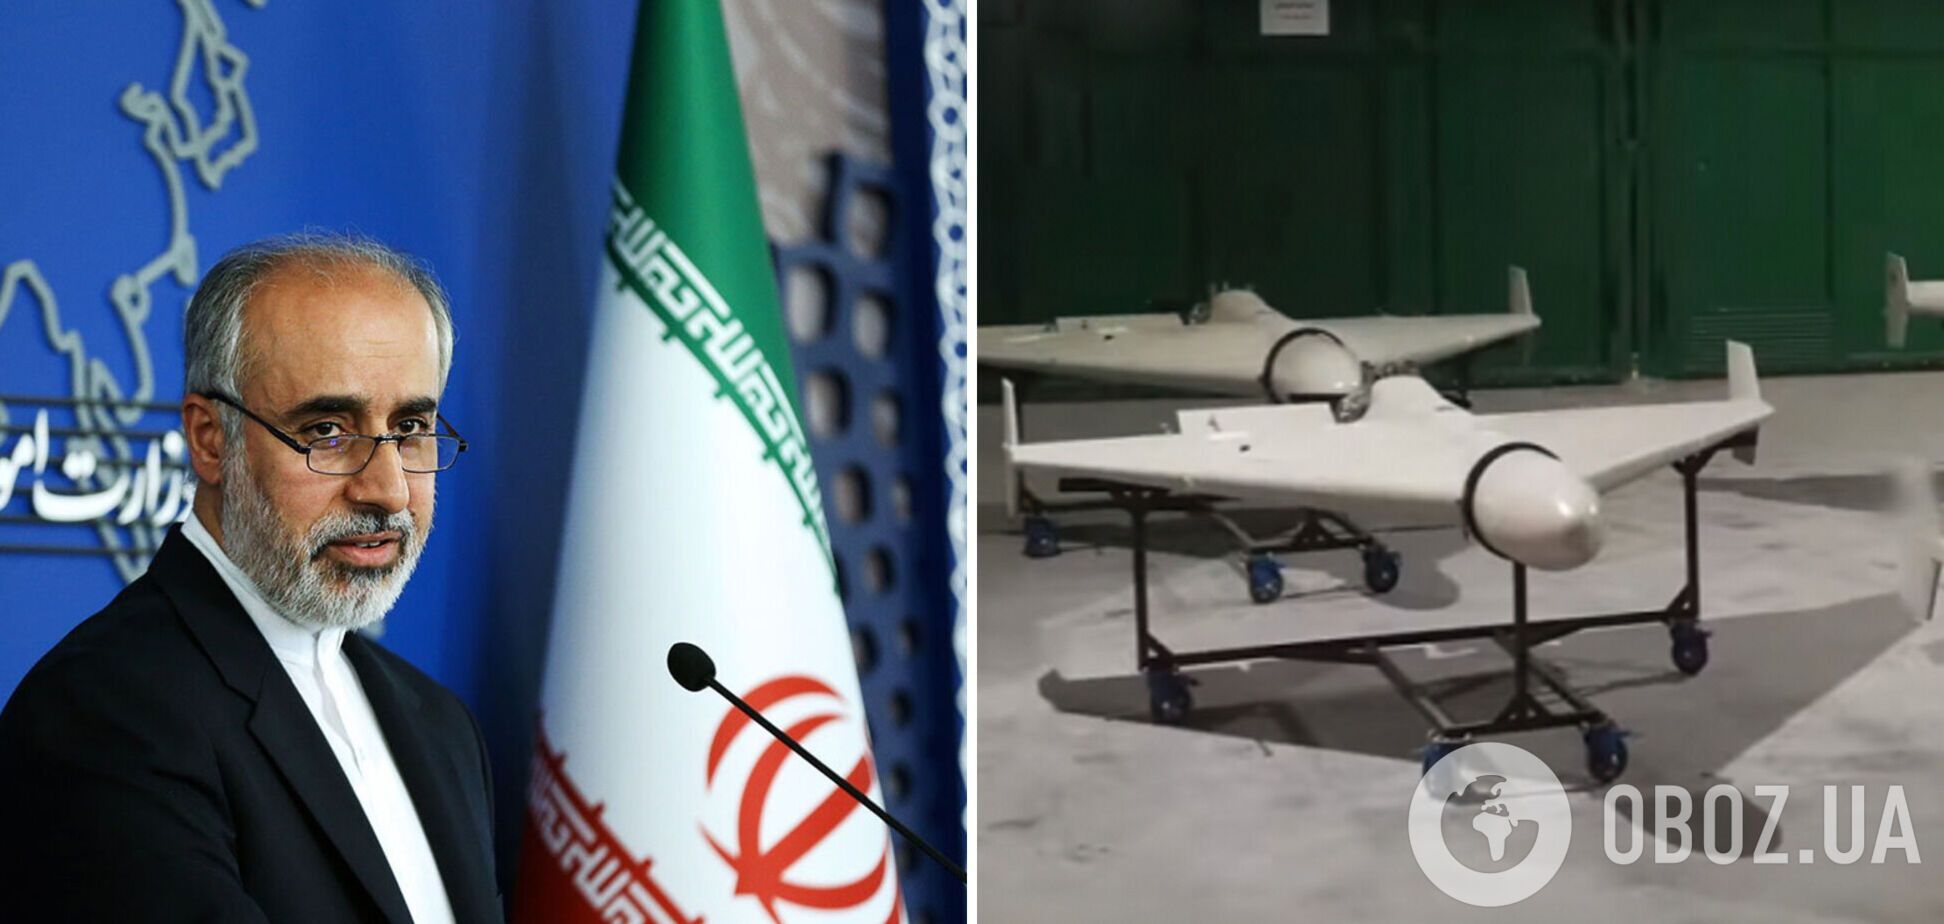 Иран, передавший свои дроны России, заявил о непризнании псевдореферендумов в Украине: напомнил об уставе ООН